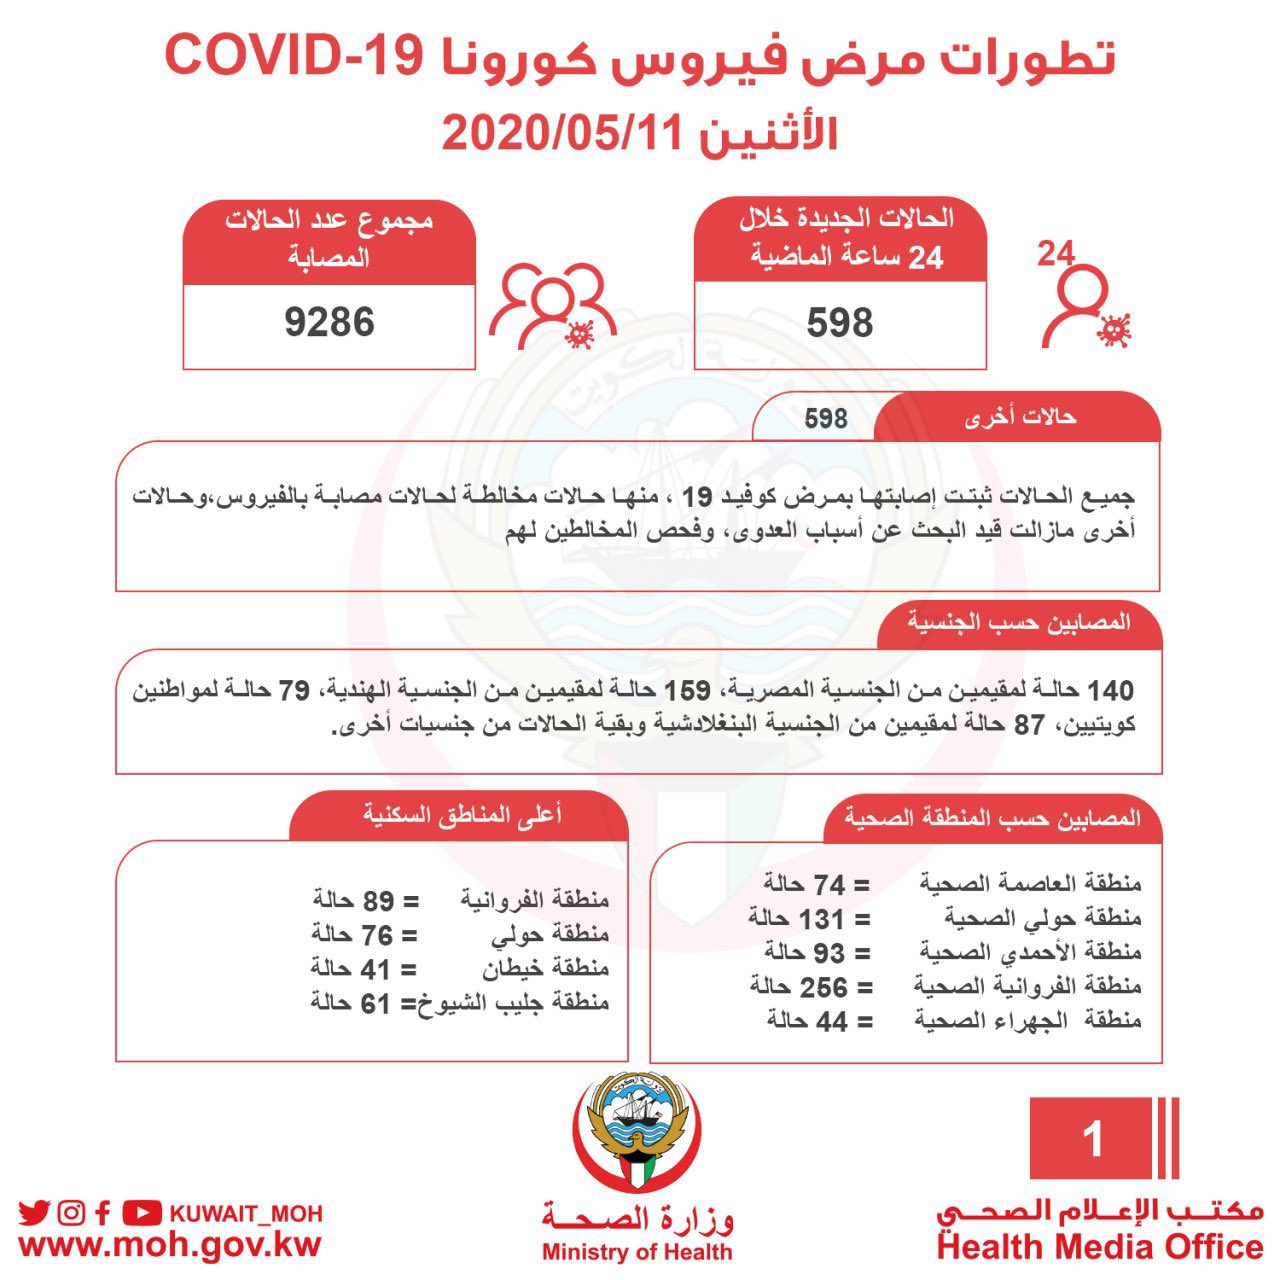 حالات فيروس كورونا في الكويت اليوم 11-5-2020